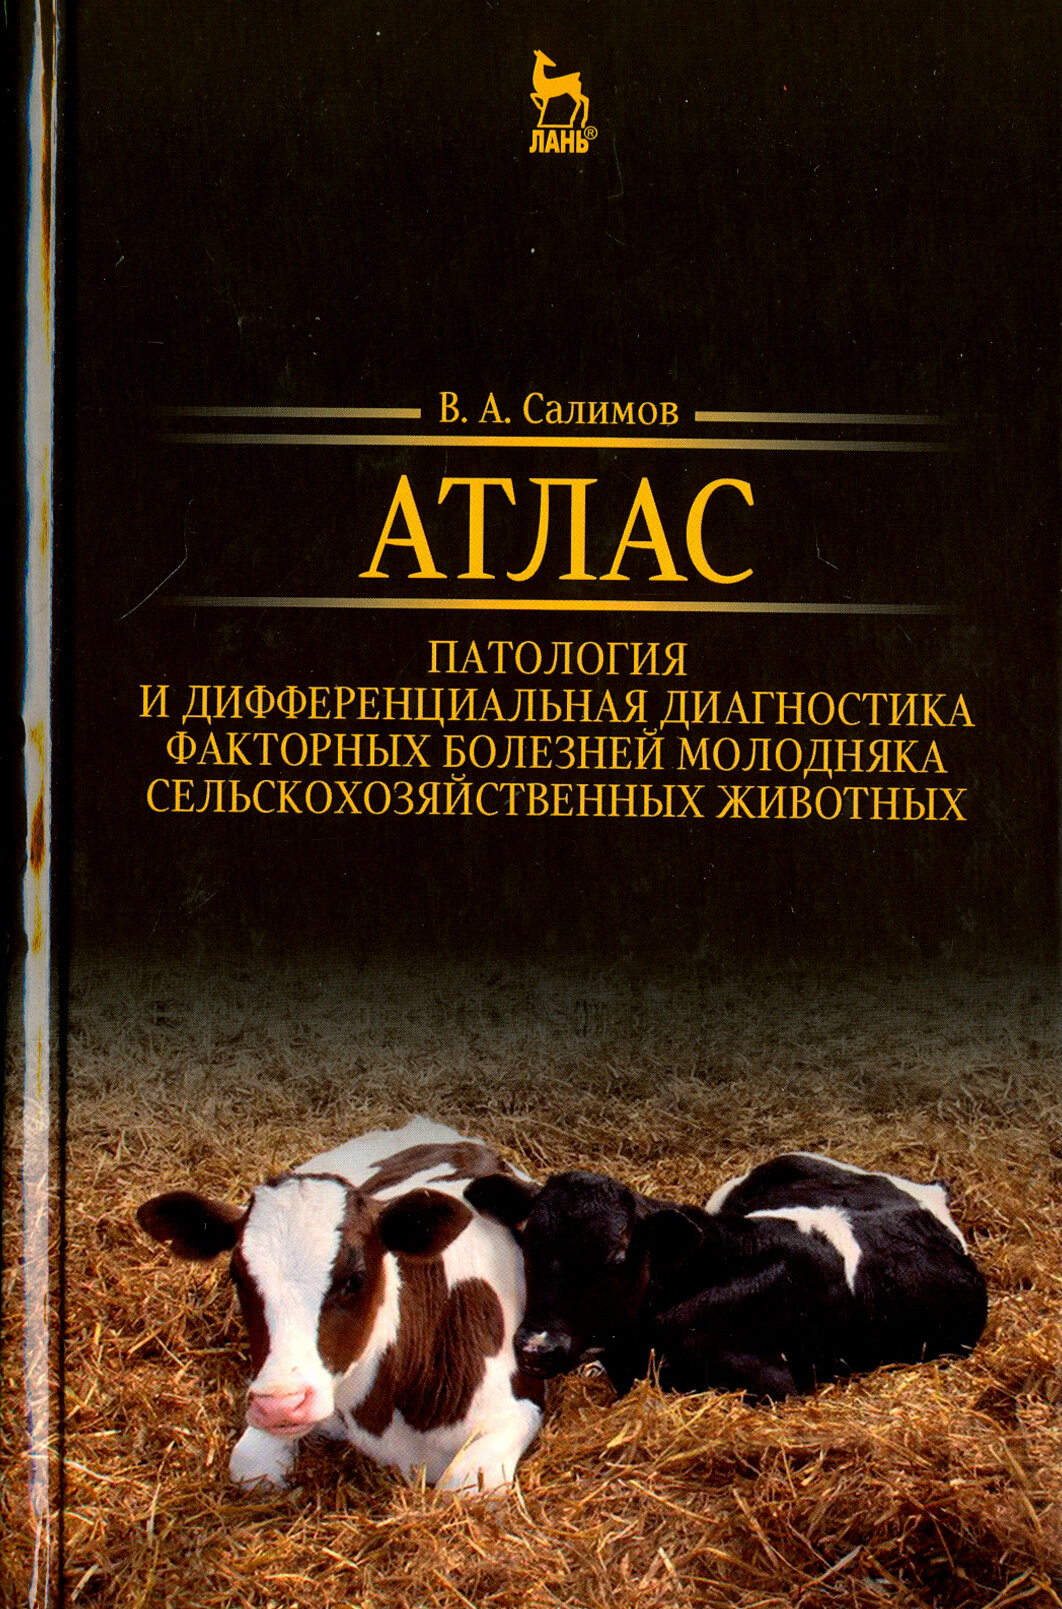 Атлас. Патология и дифференциация болезней молодых сельскохозяйственных животных - фото №3